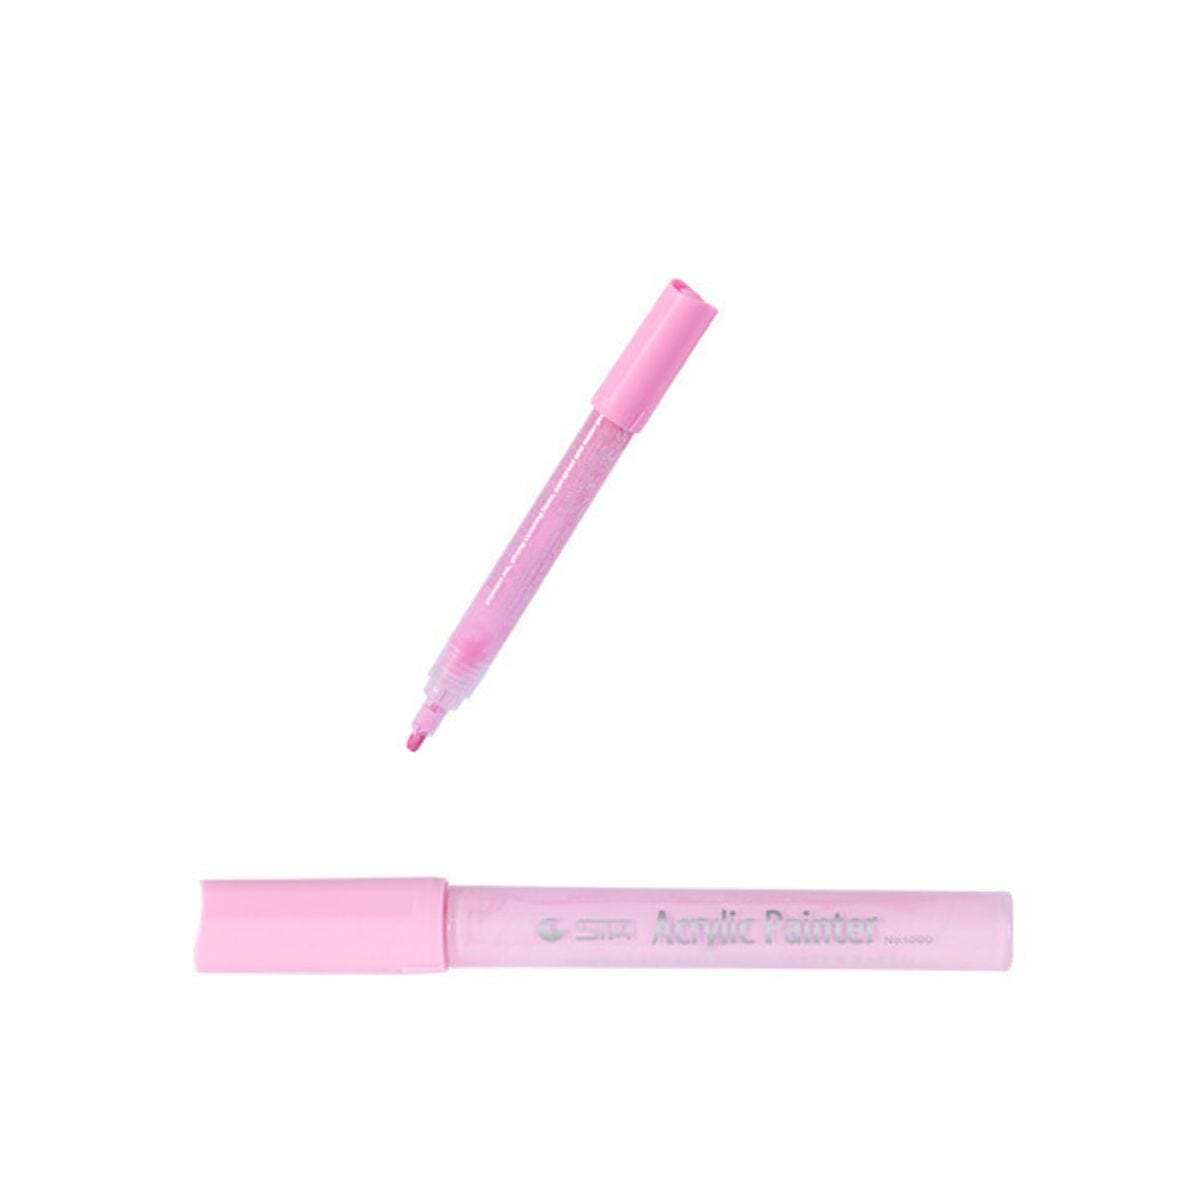 STA SM 調教身體塗鴉筆 人體情趣彩繪 粉紅色 購買